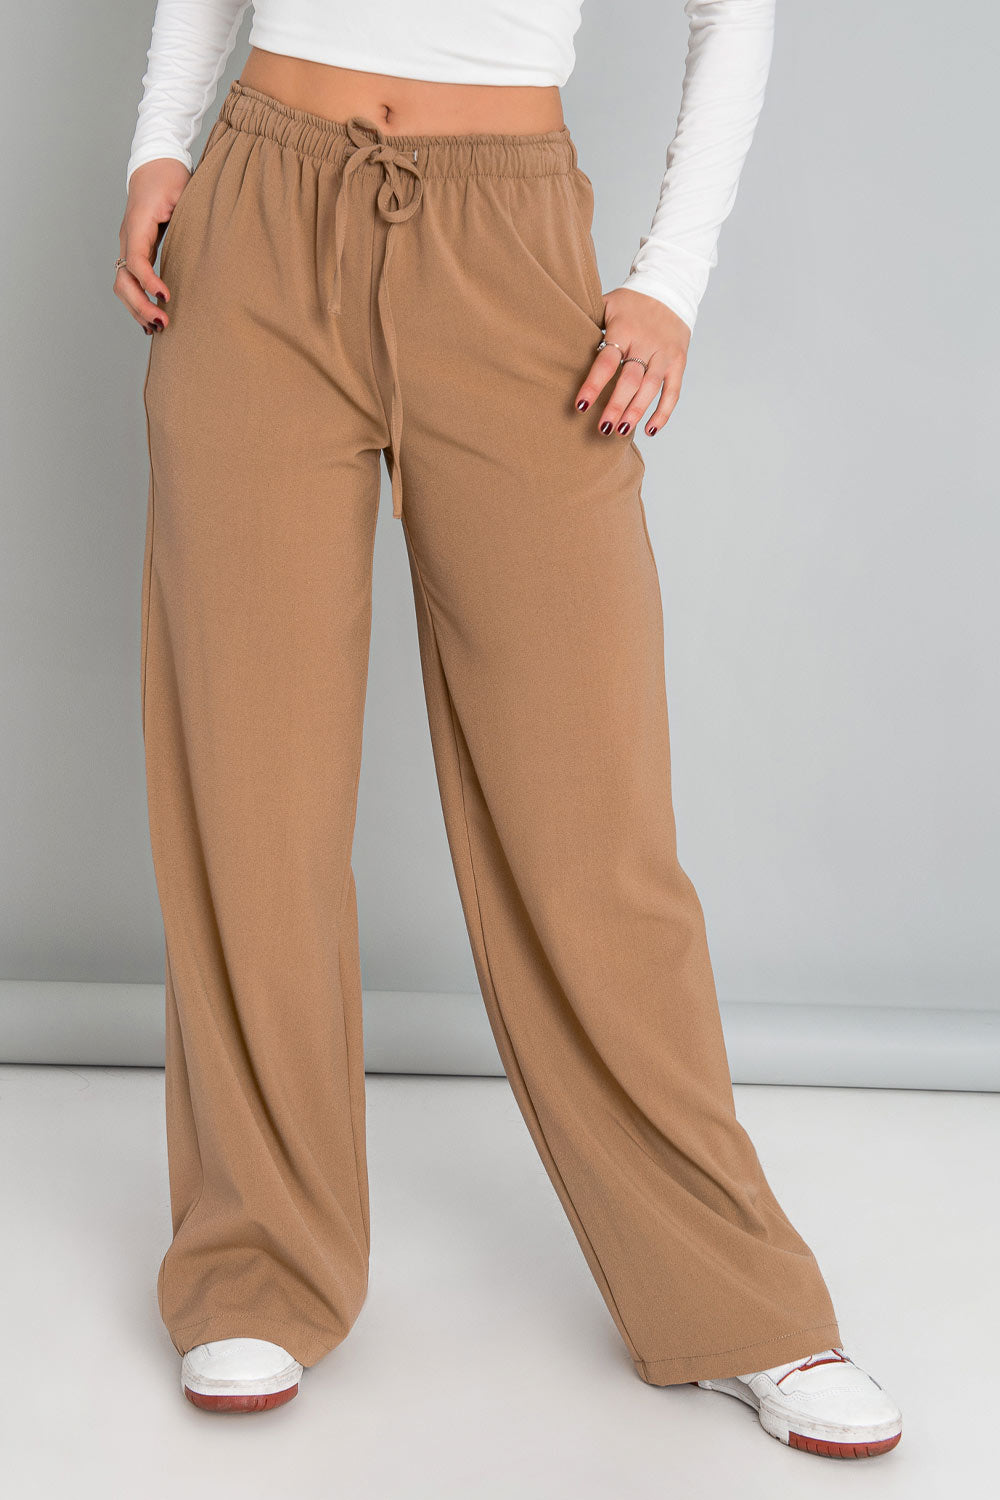 Pantalón de fit wide leg, cintura alta con pretina elástica, jareta frontal ajustable y bolsillos delanteros.